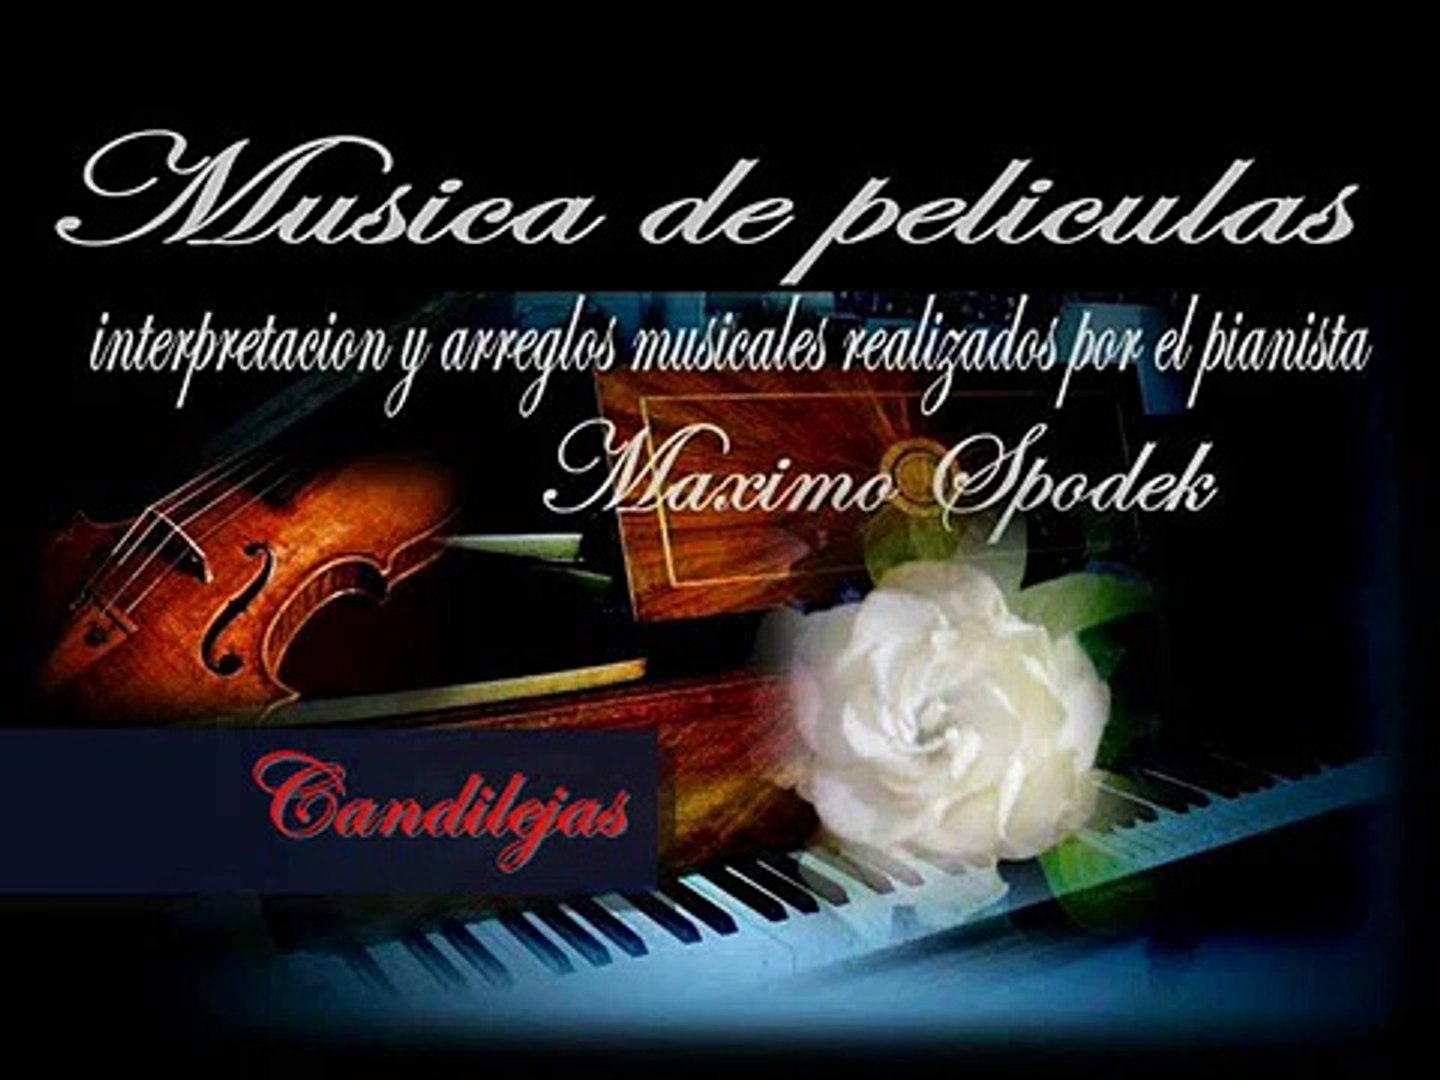 MUSICA INSTRUMENTAL DE PELICULAS, CANDILEJAS / LIMELIGHT, EN PIANO ROMANTICO  Y ARREGLO MUSICAL - video Dailymotion